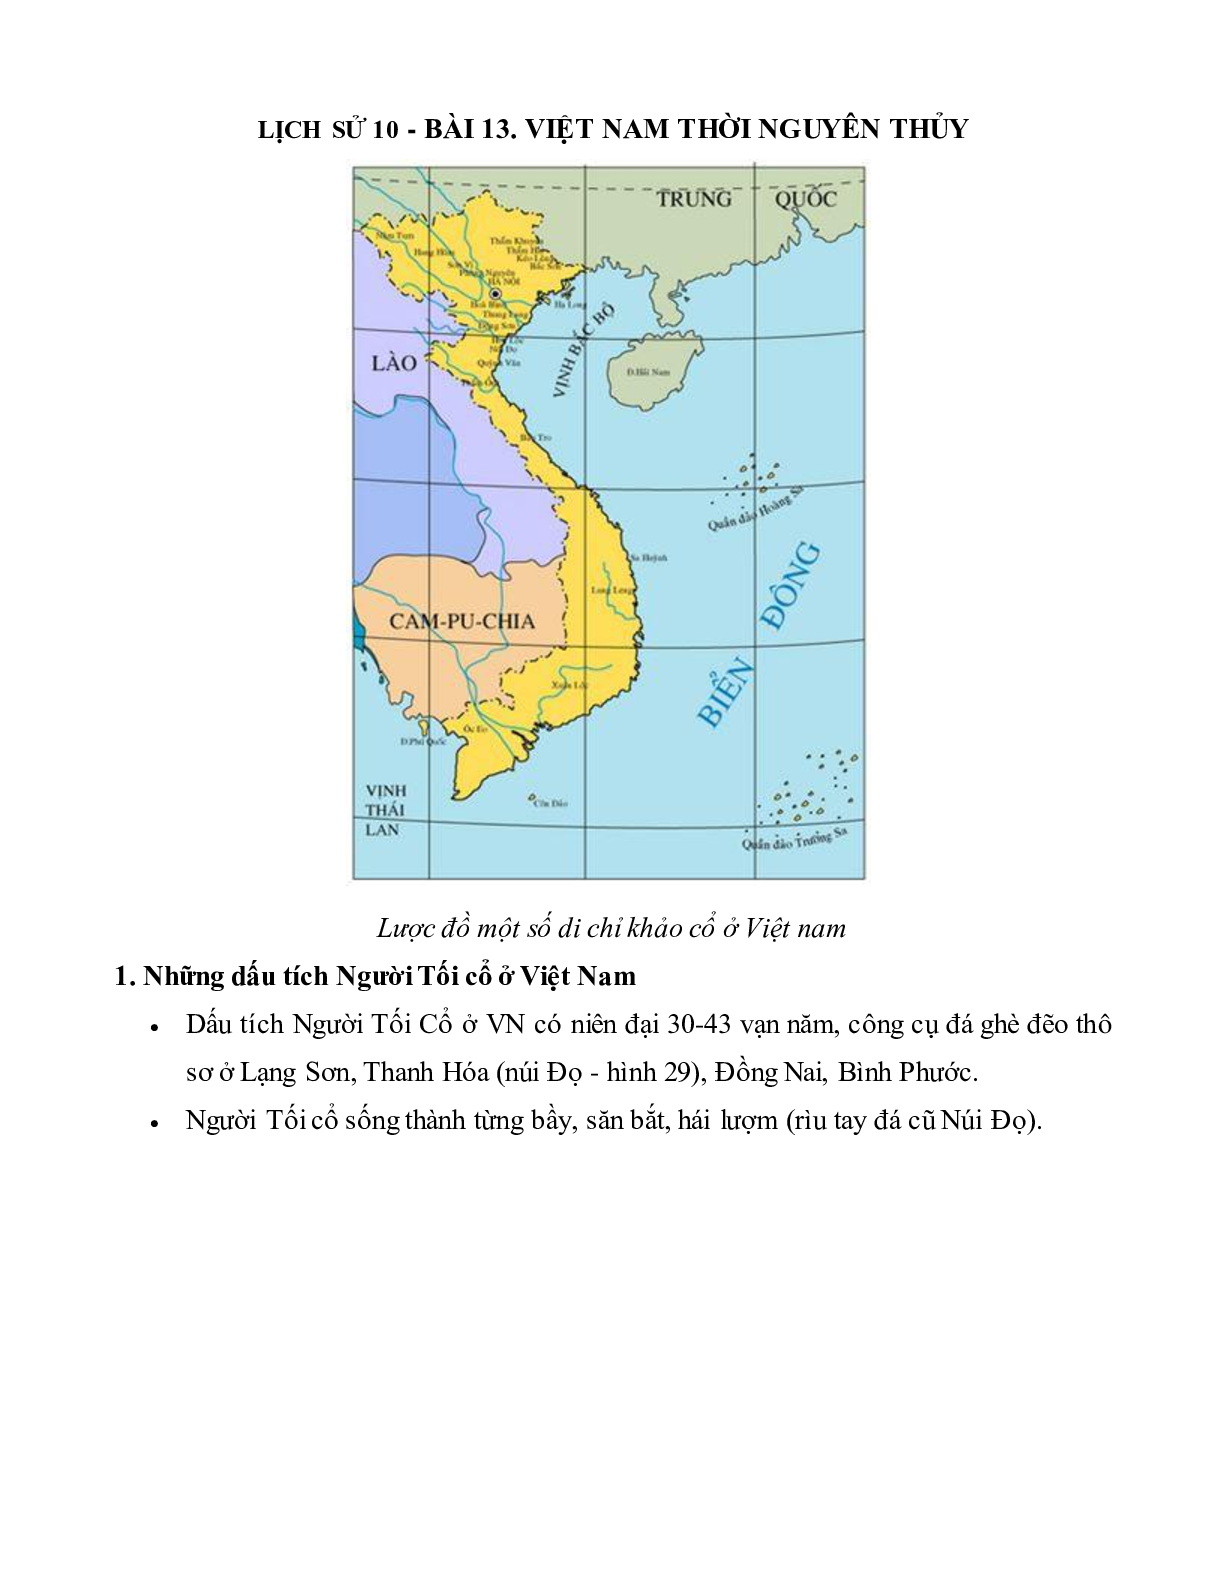 Lý thuyết Lịch sử 10: Bài 13: Việt Nam thời nguyên thủy mới nhất (trang 1)